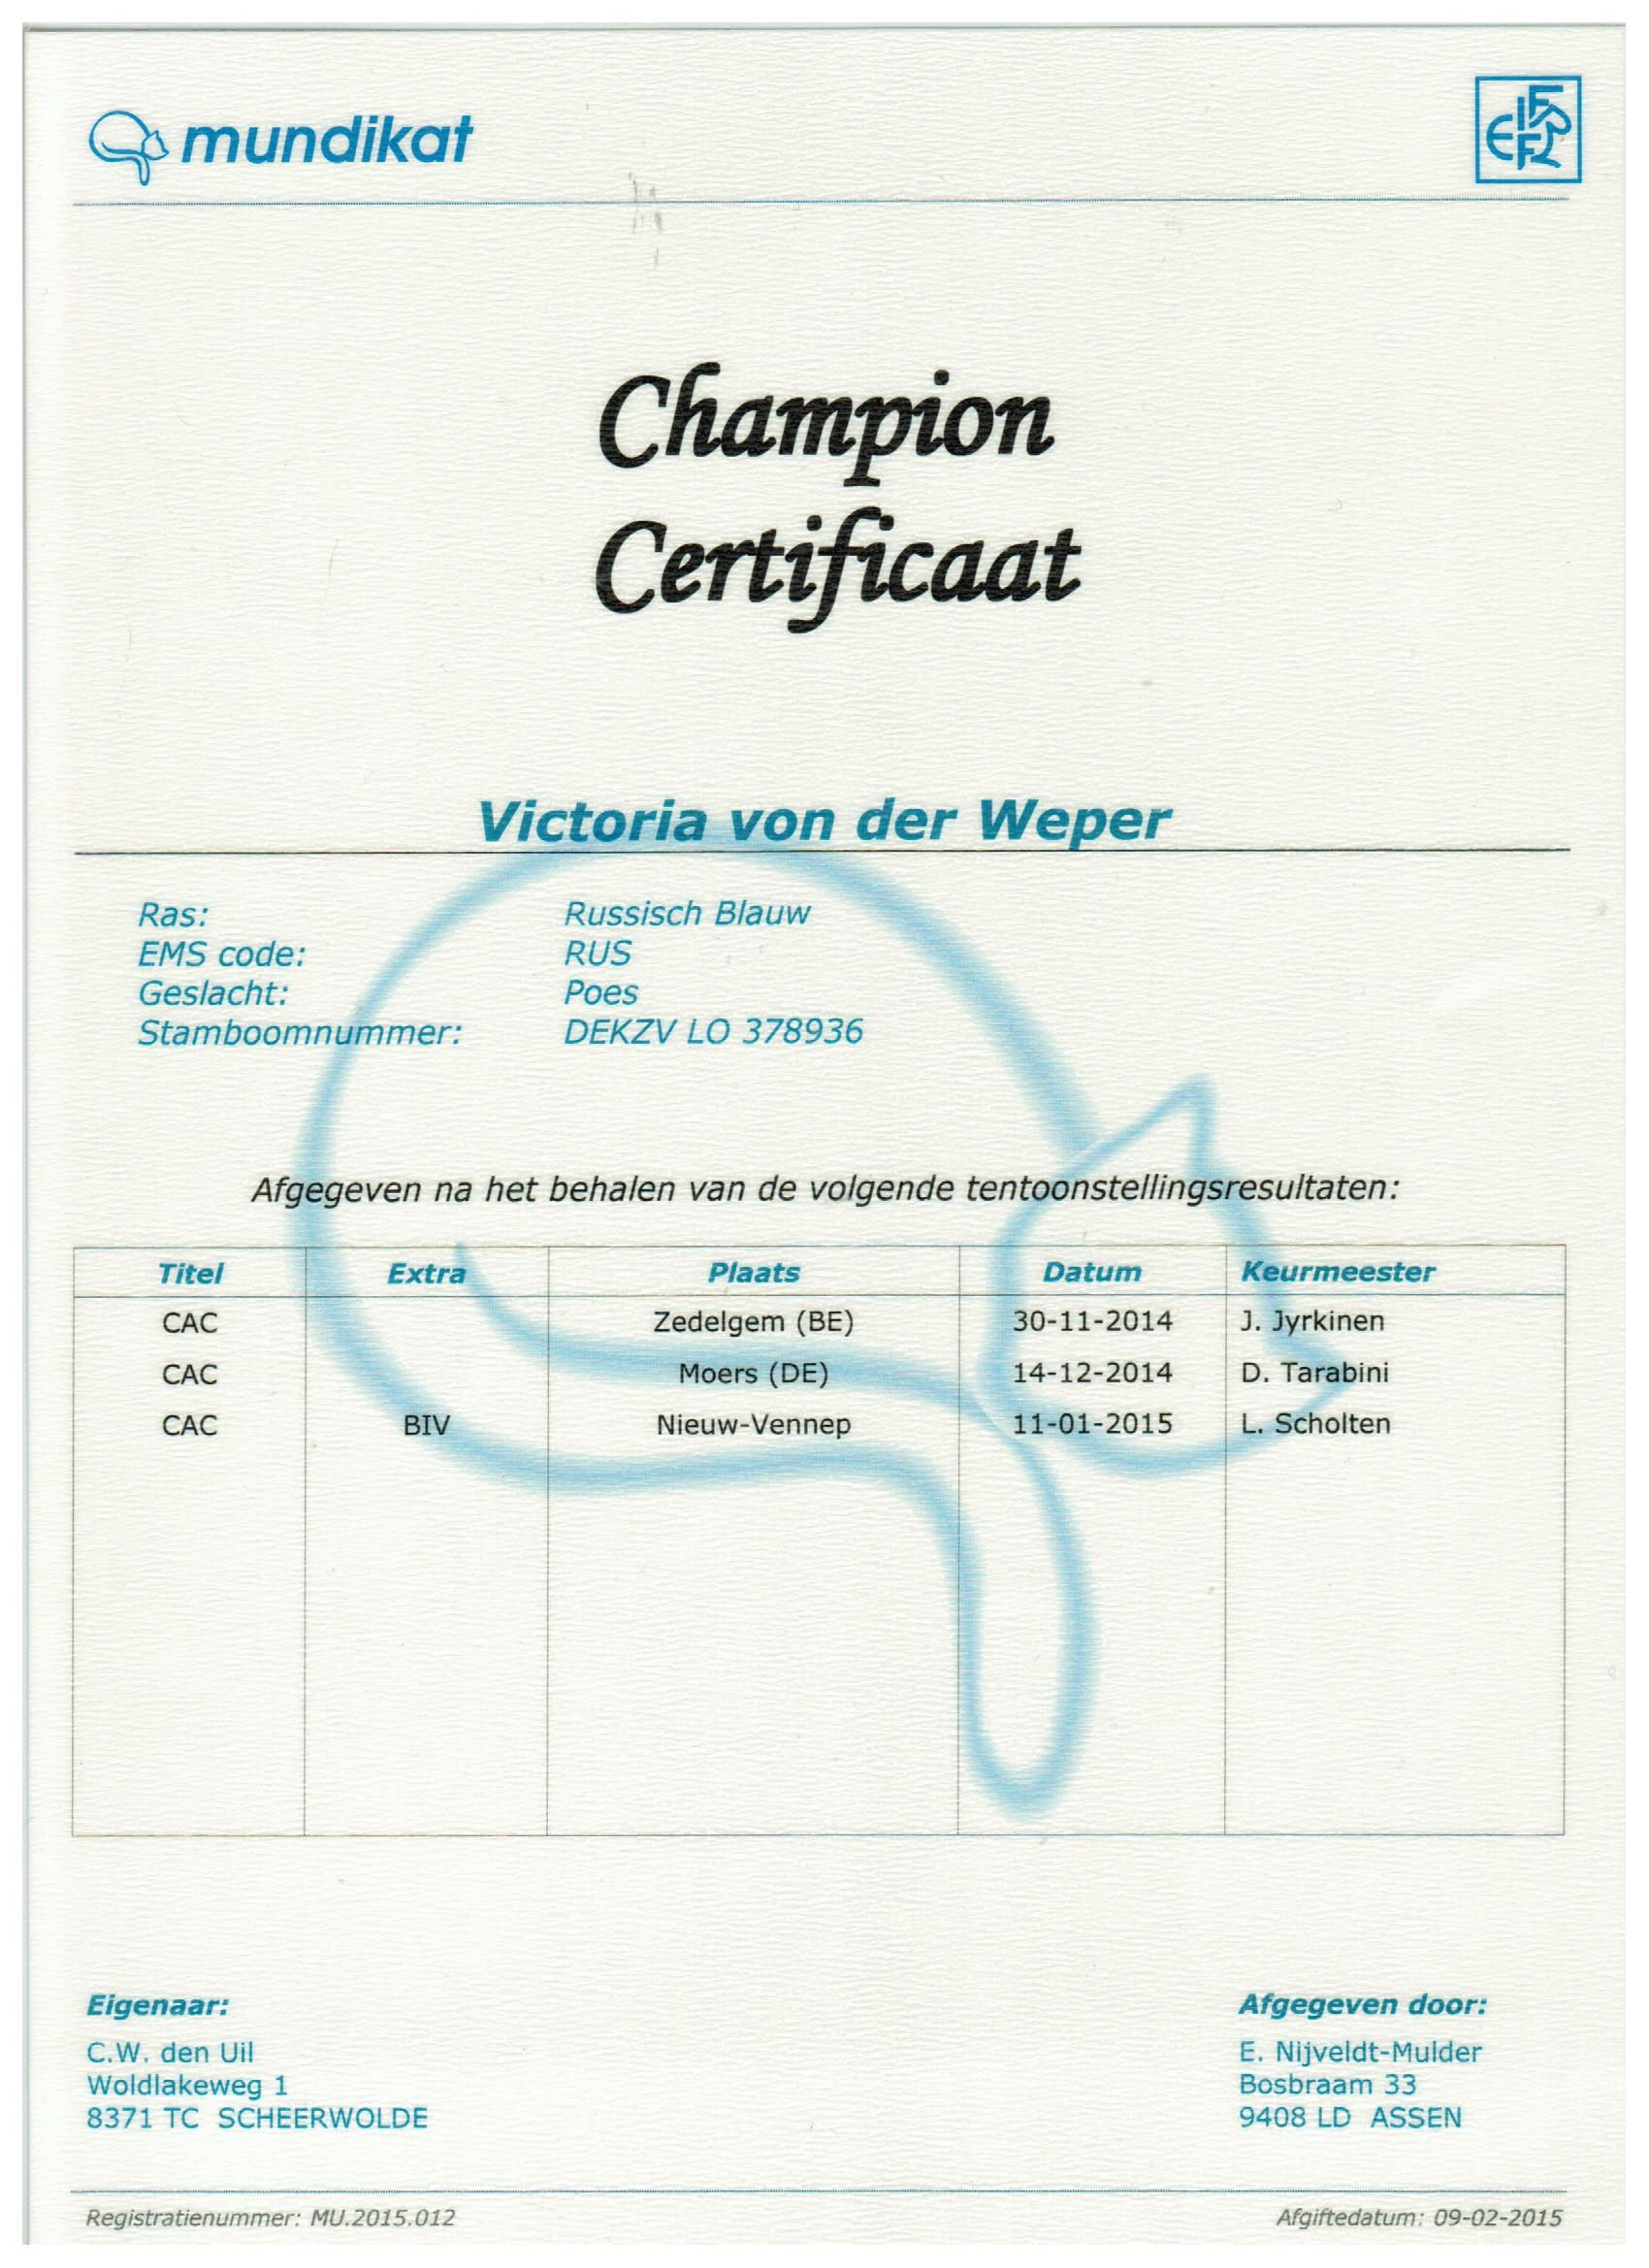 Kampioens certificaat Victoria von der Weper.jpeg